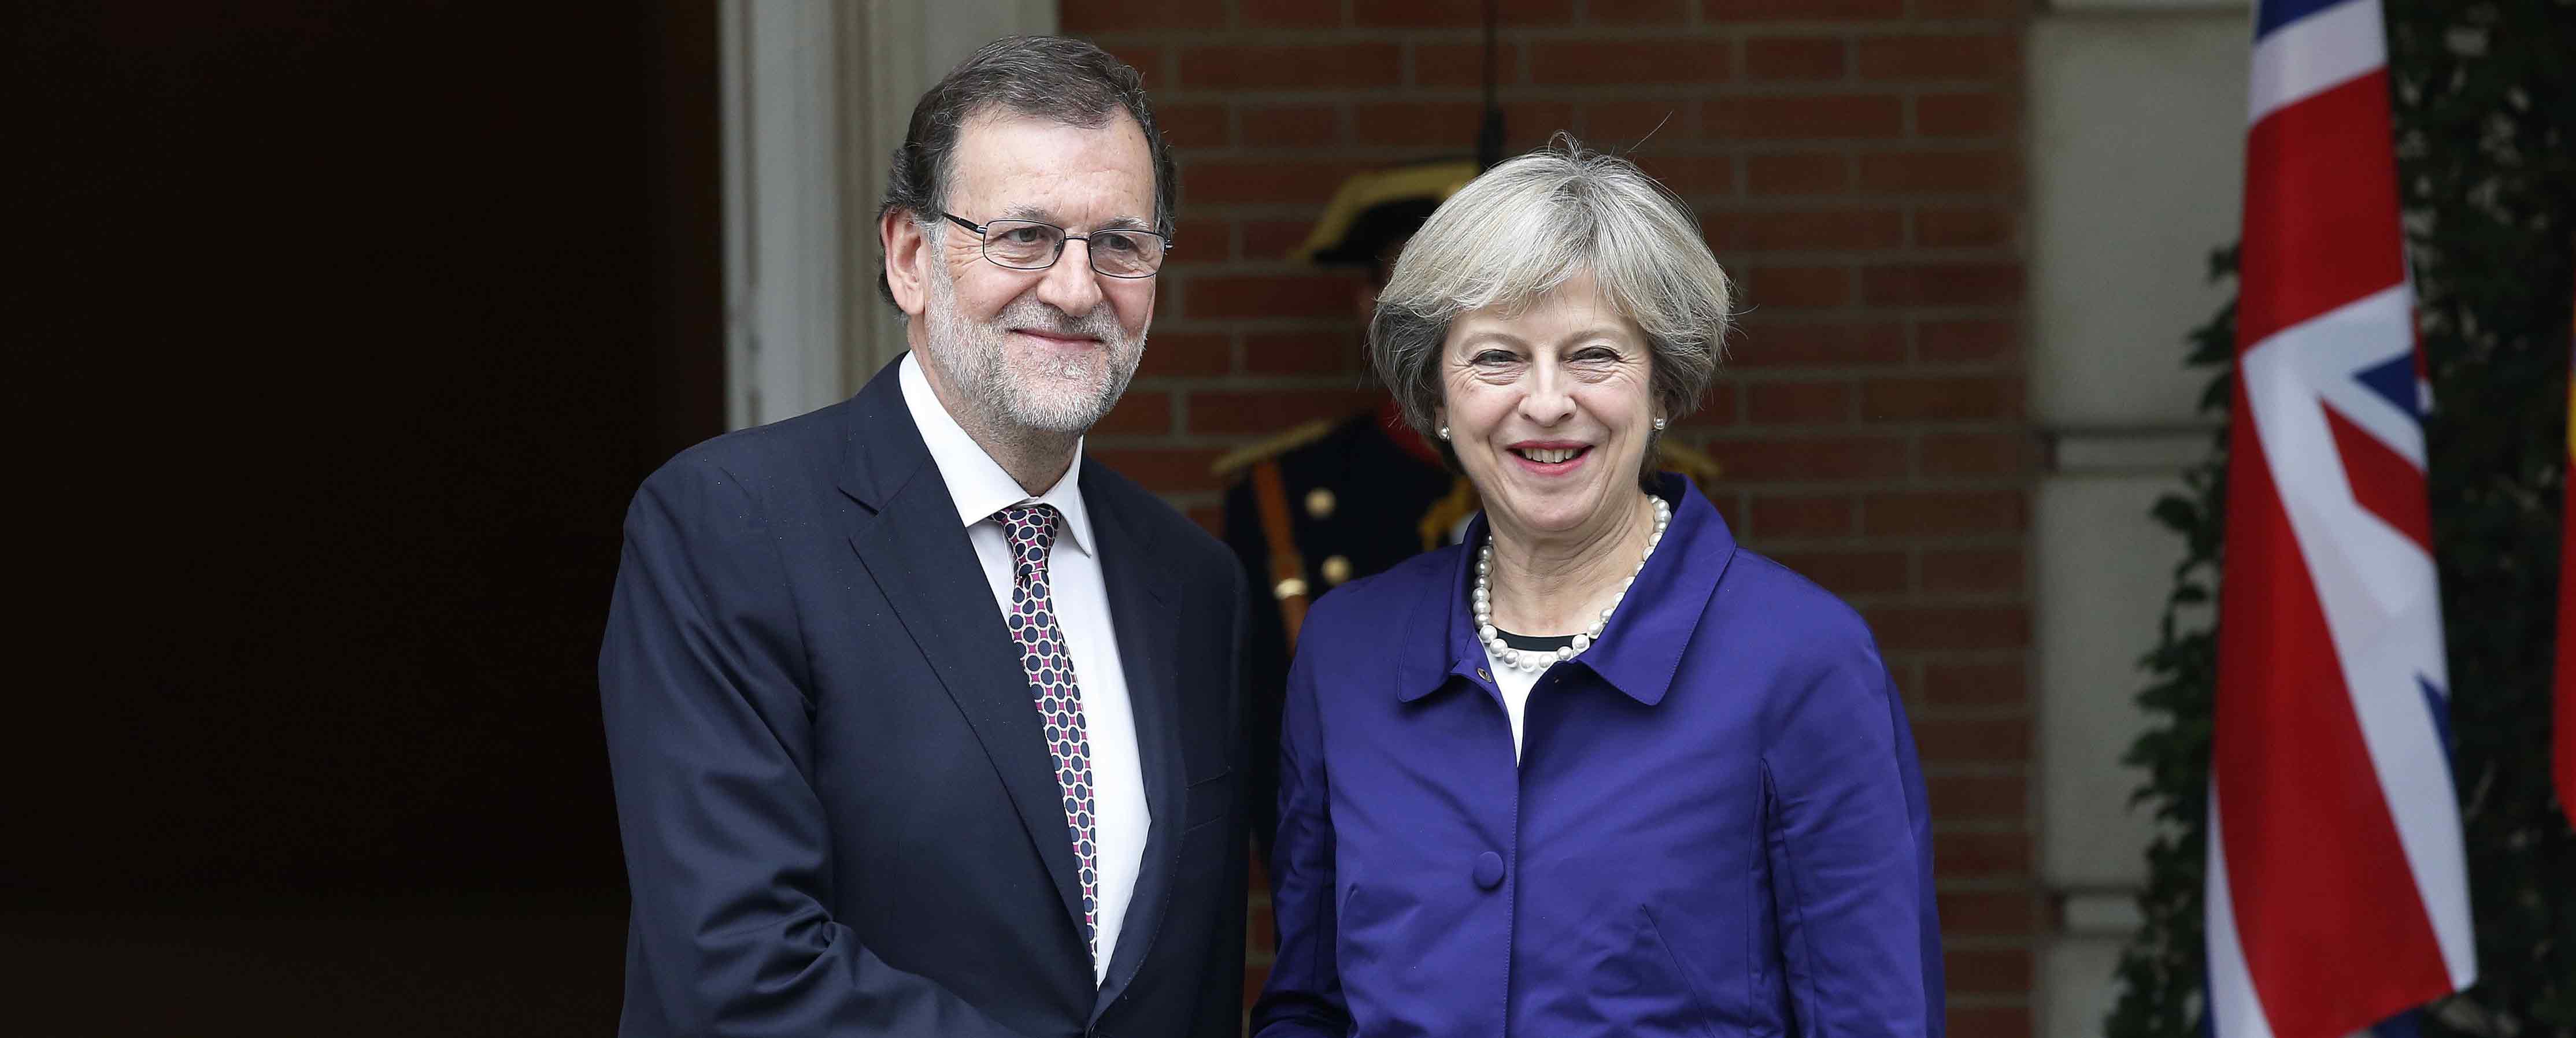 El presidente del Gobierno en funciones, Mariano Rajoy, y la primera ministra británica, Theresa May, posan para los medios.